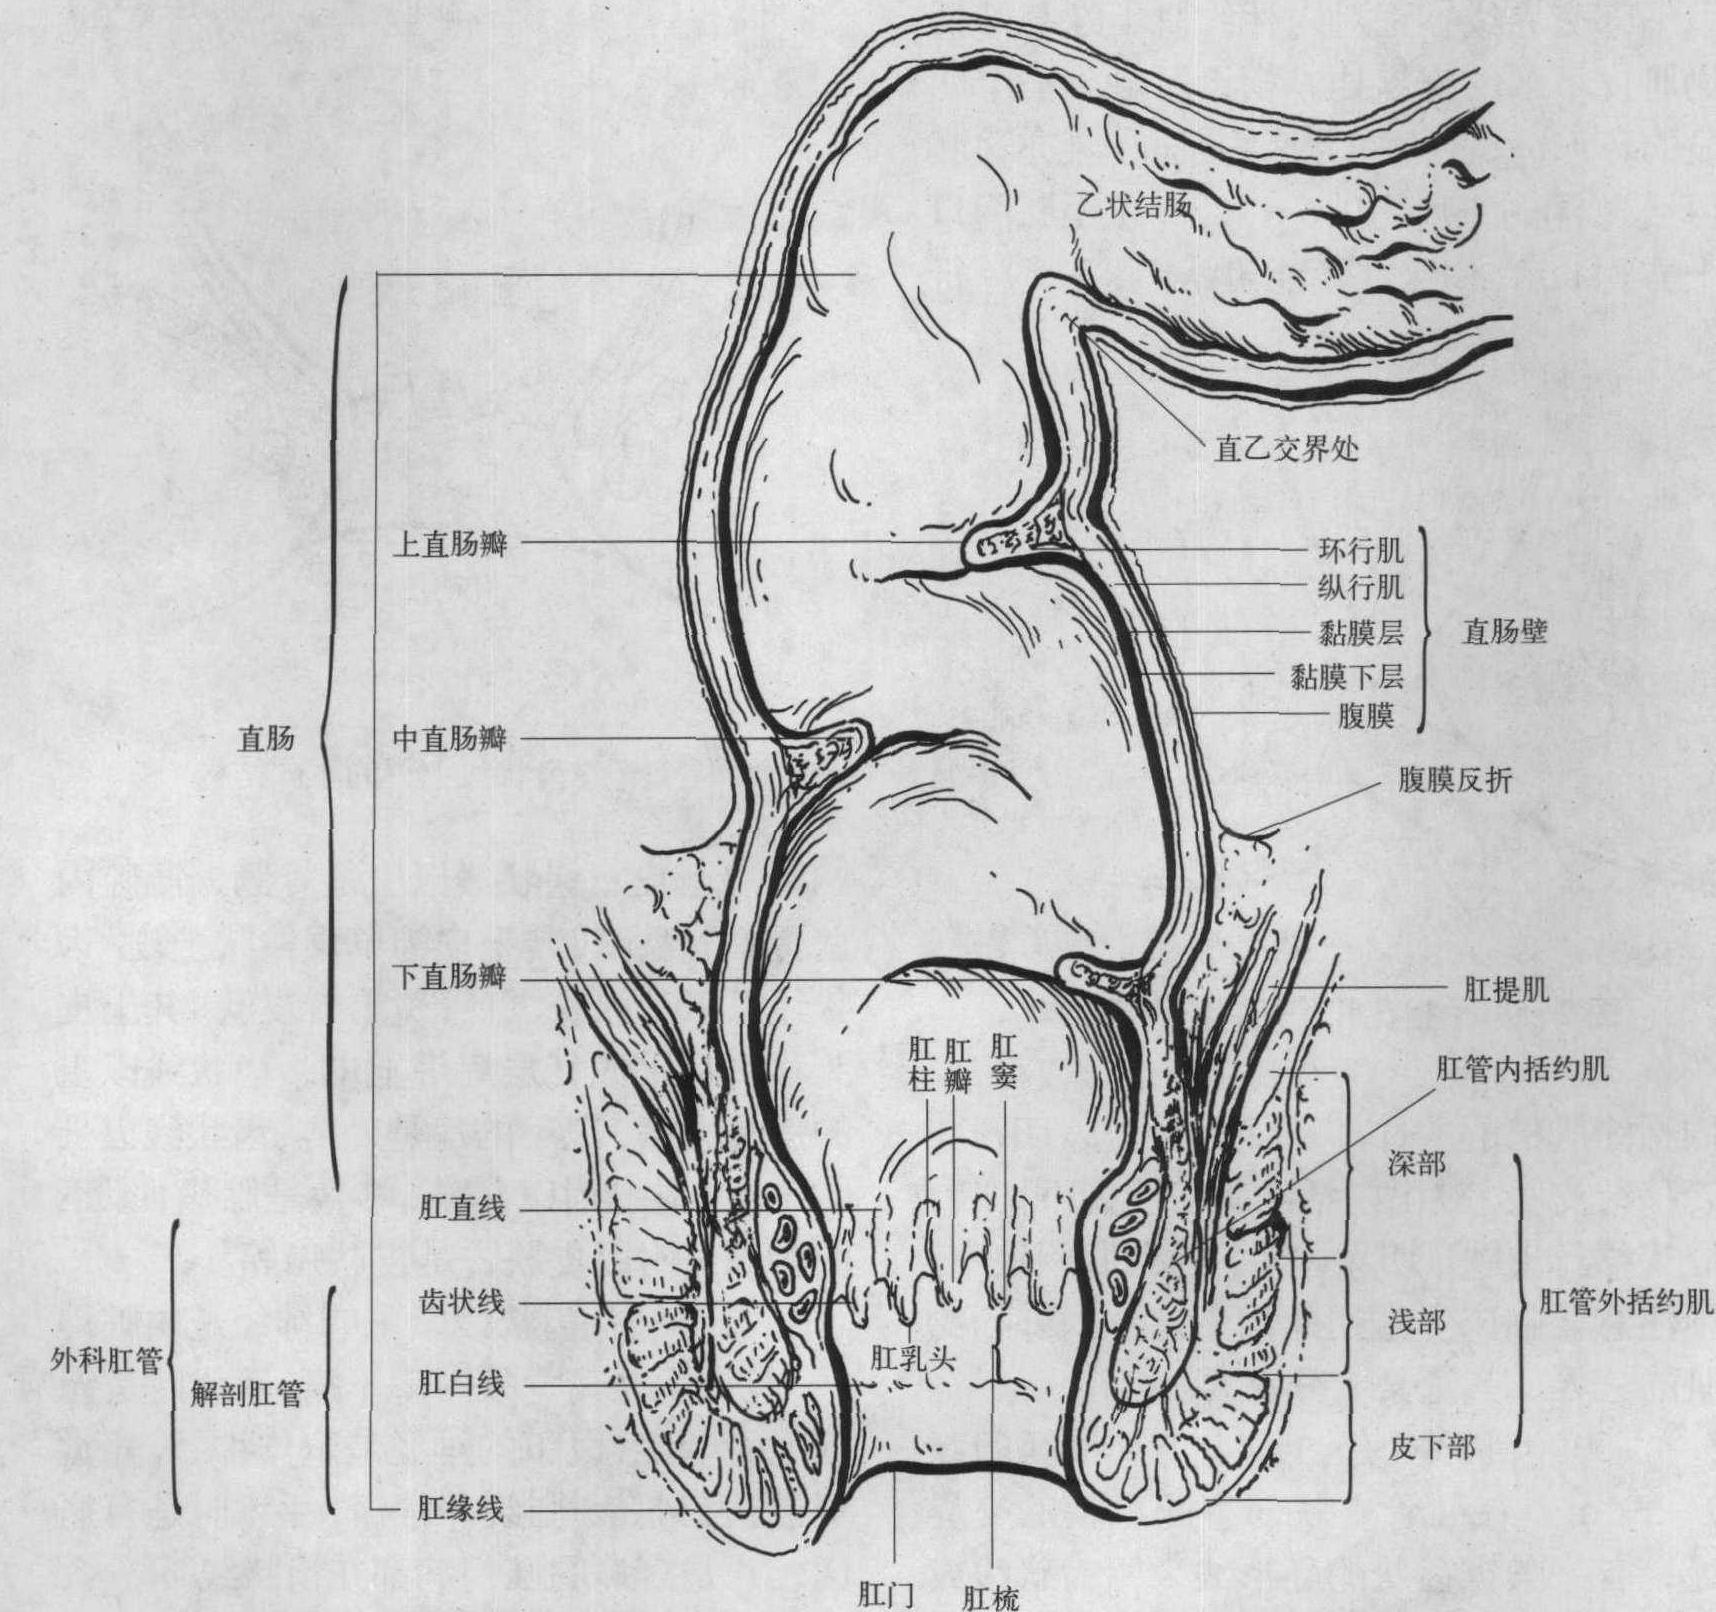 【简约版】肛门、直肠解剖生理概要_疾病